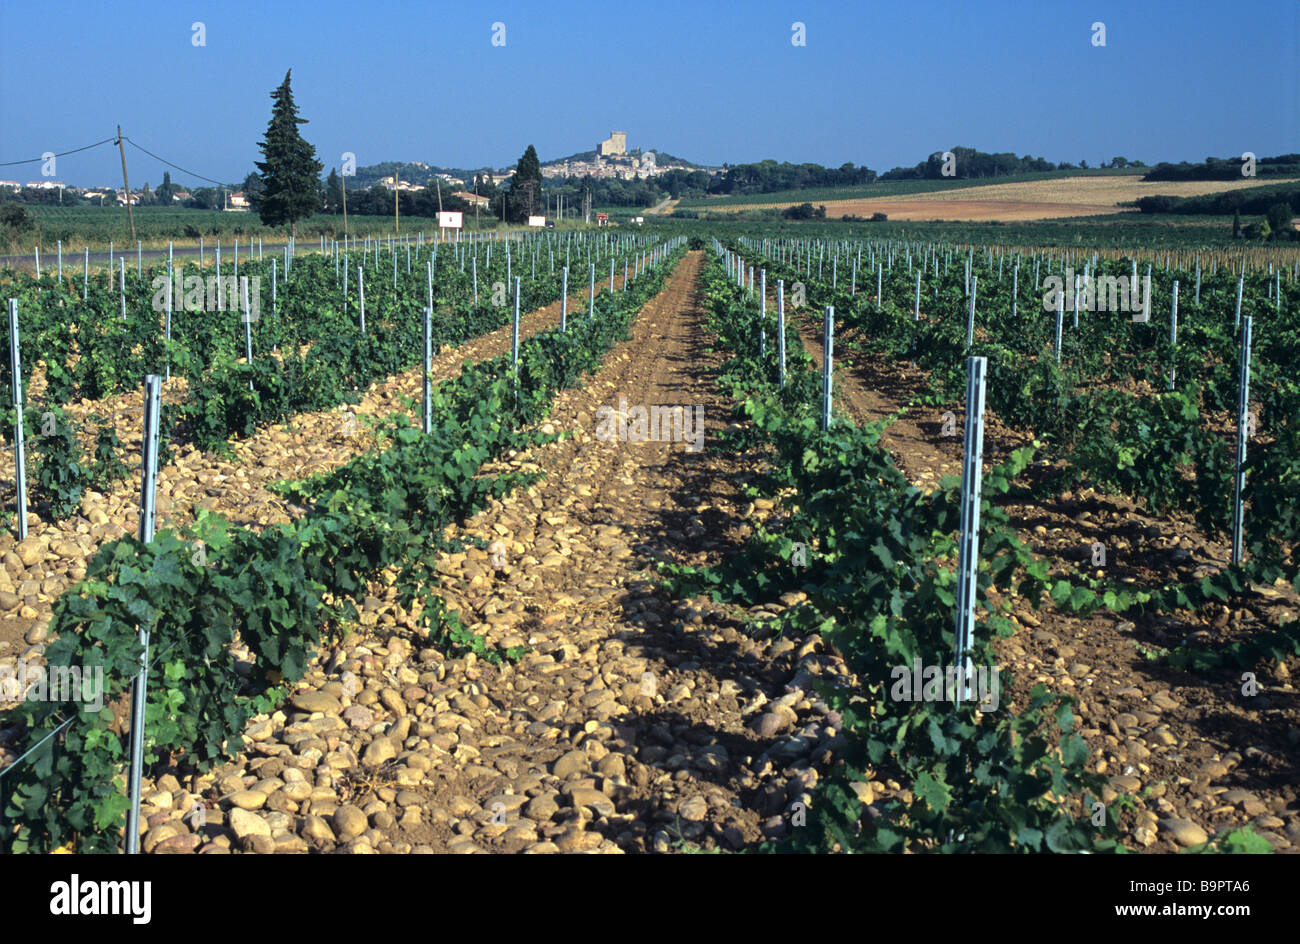 Châteauneuf-du-Pape, vignoble les vignes ou les vignobles, Côtes-du-Rhône, Vaucluse, Provence, France Banque D'Images